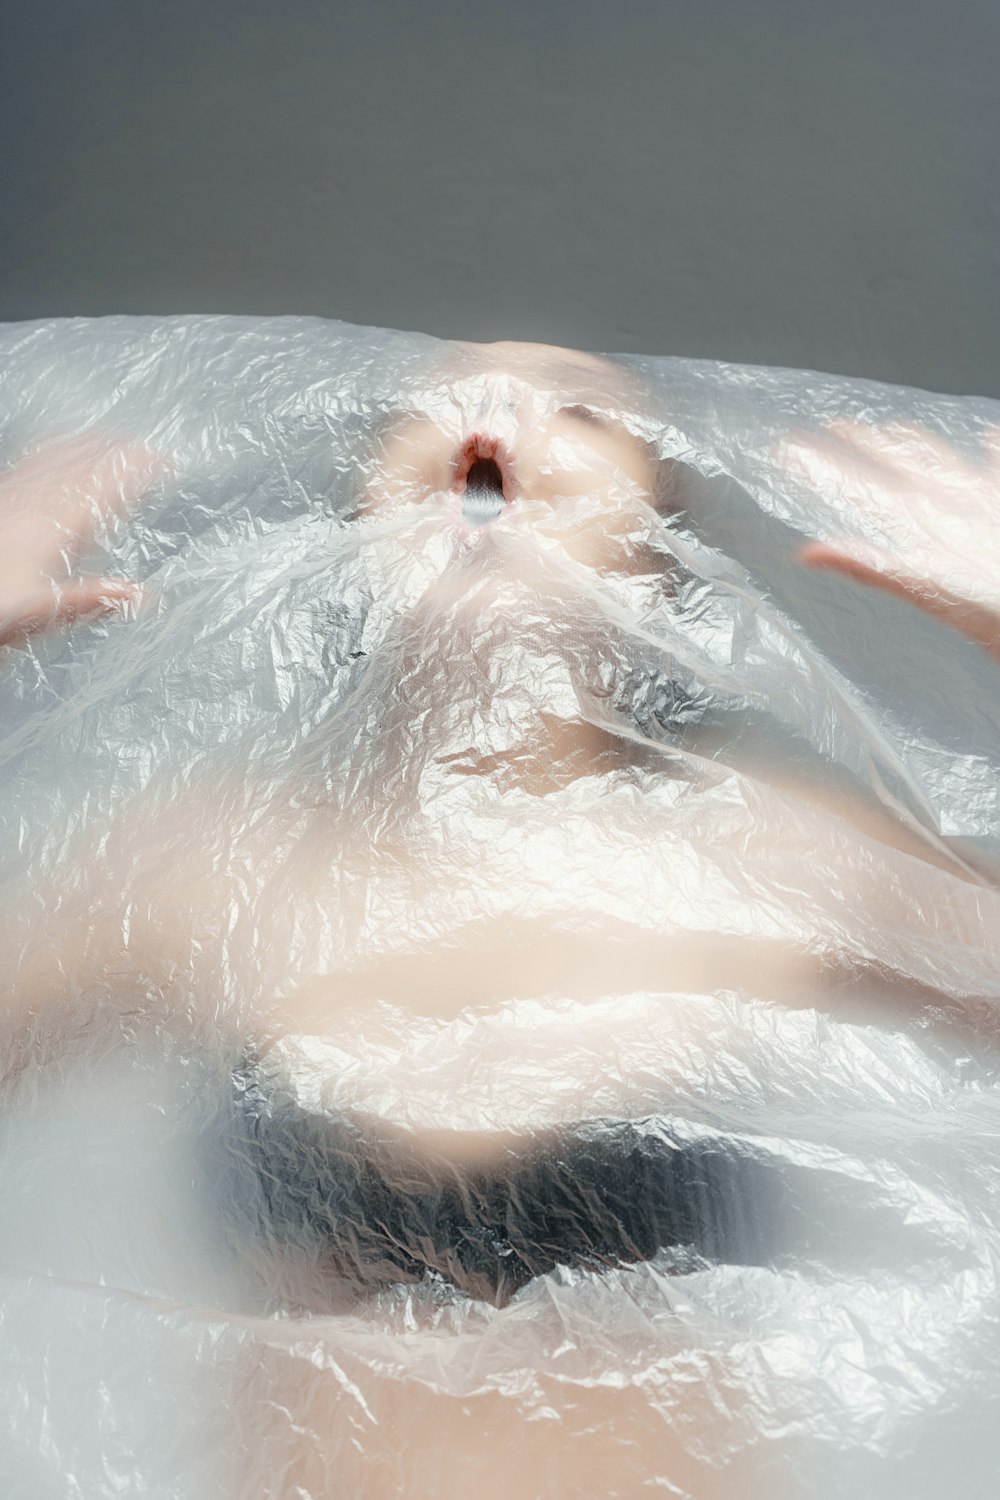 una mujer acostada en una bañera cubierta de plástico